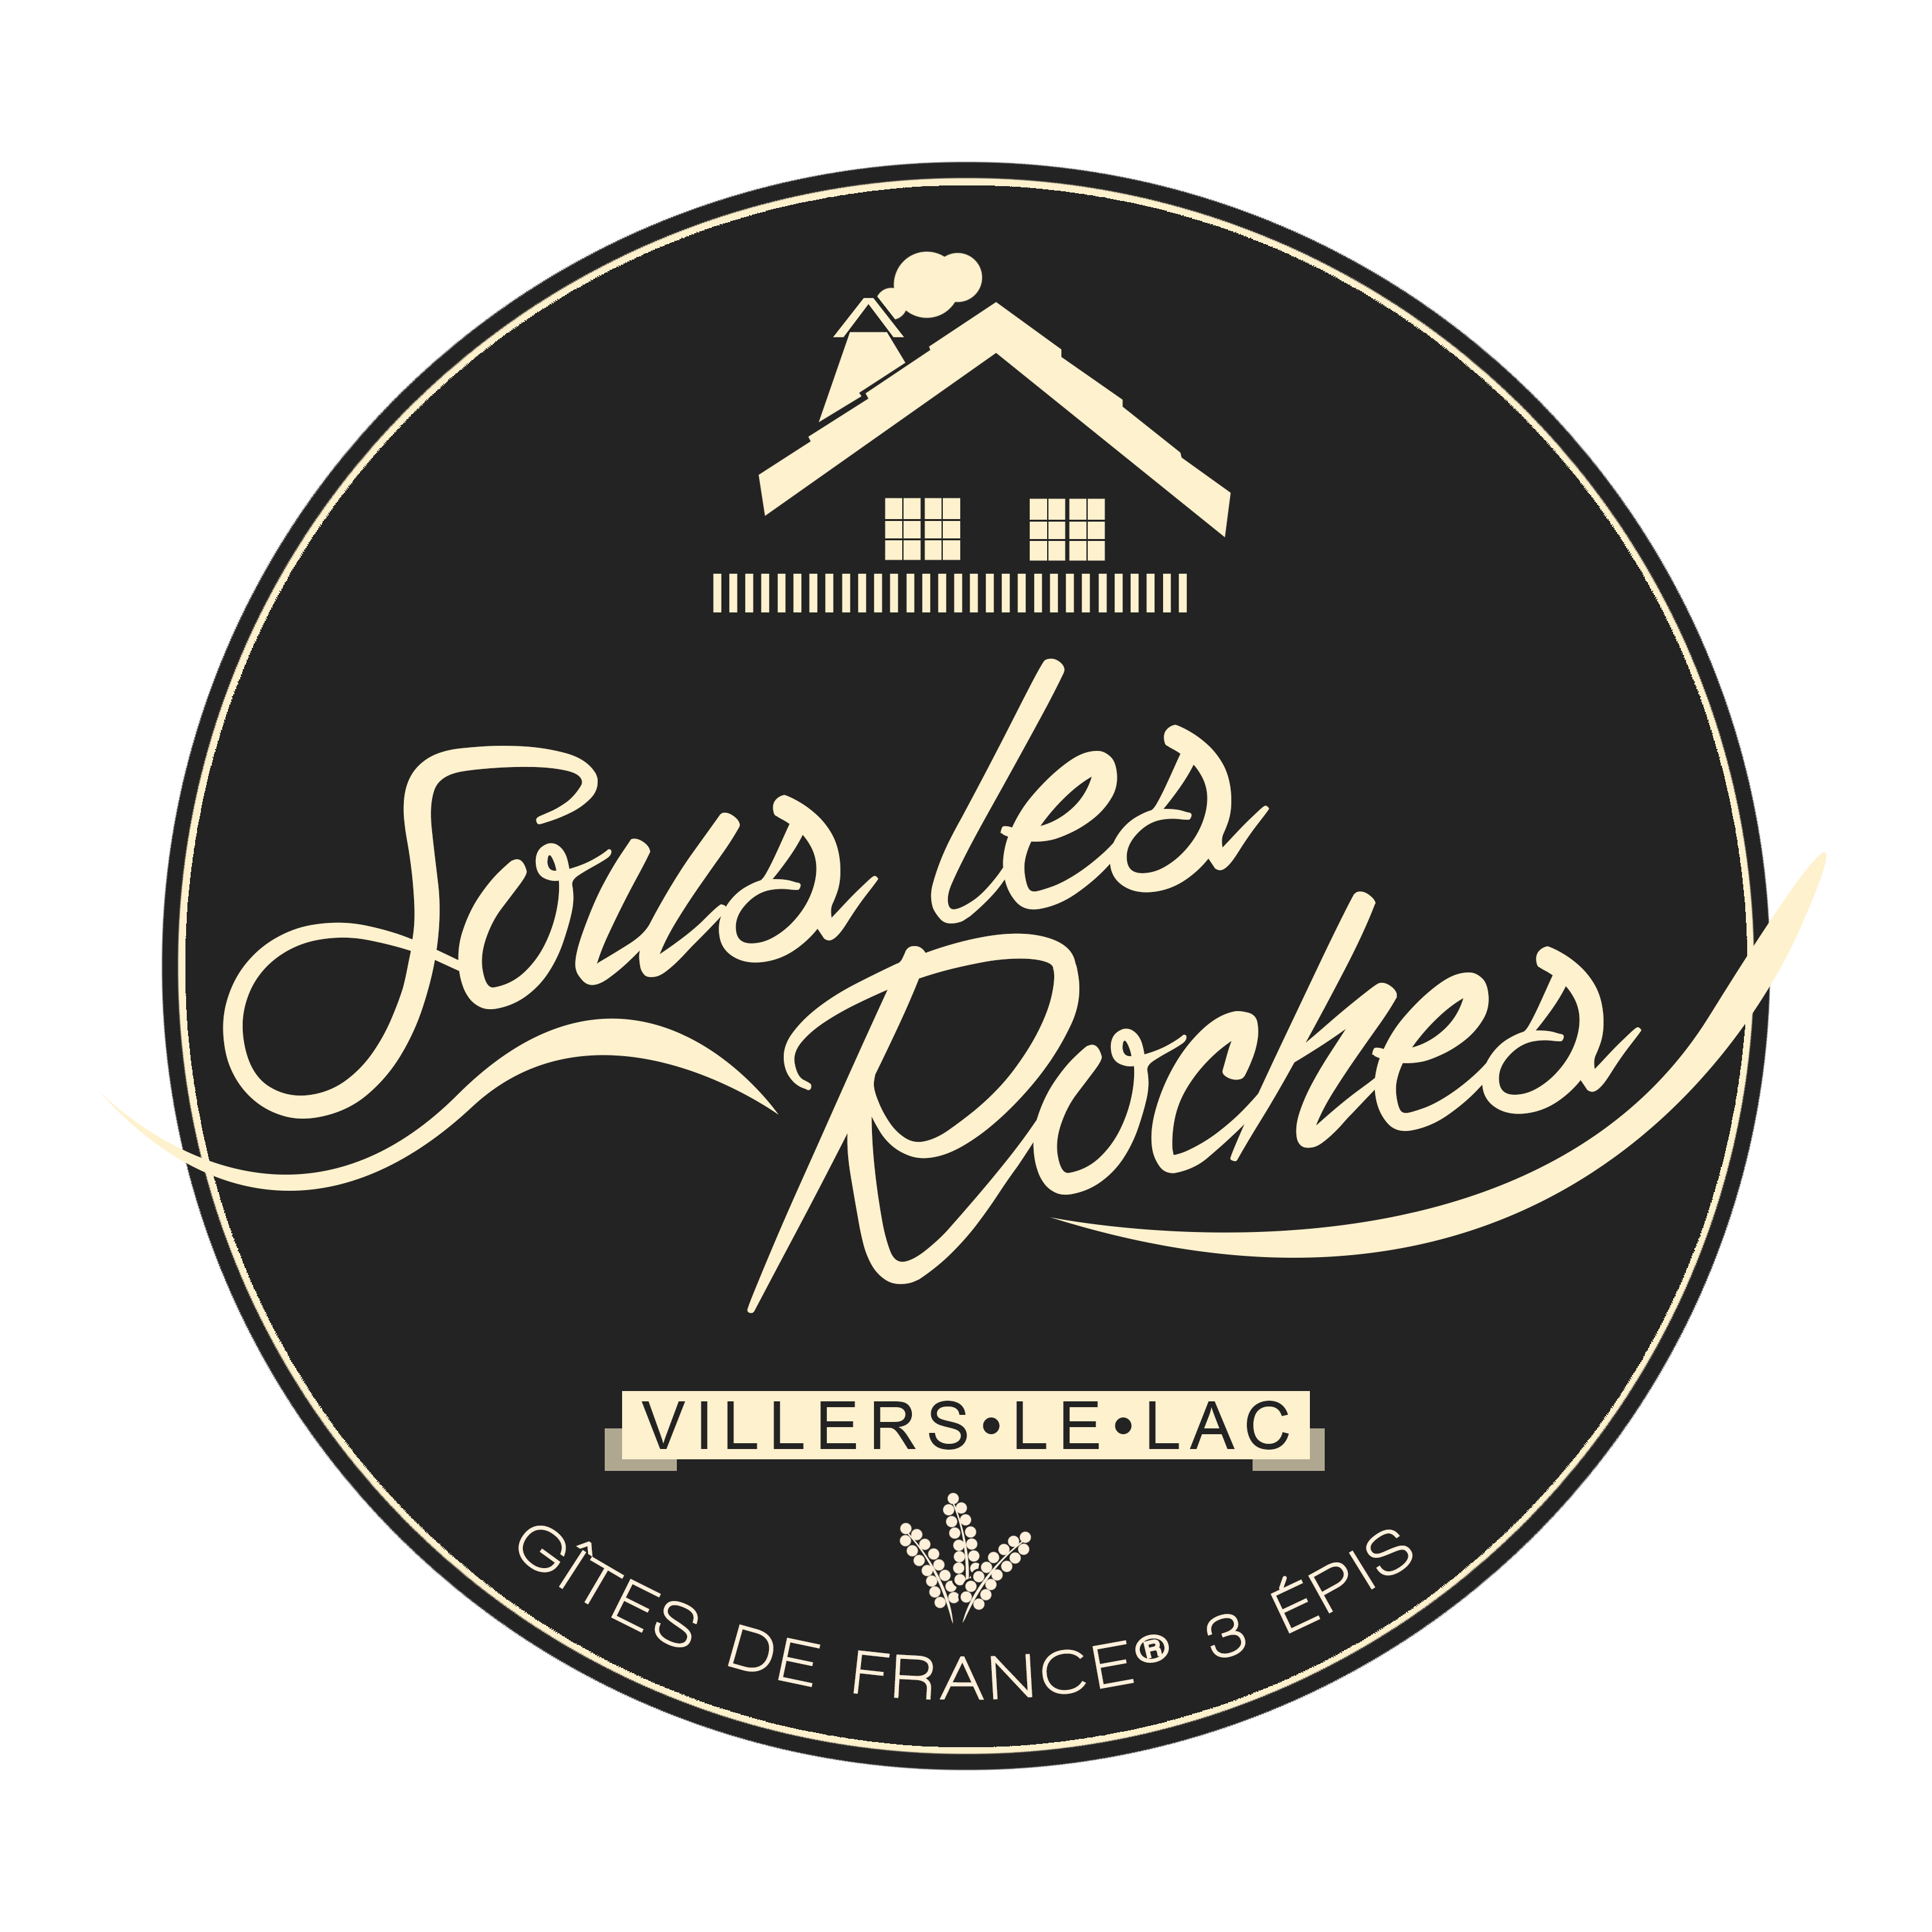 Gîte Sous-les-Roches, Gîtes de France® 3 épis à Villers-le-lac (Doubs)